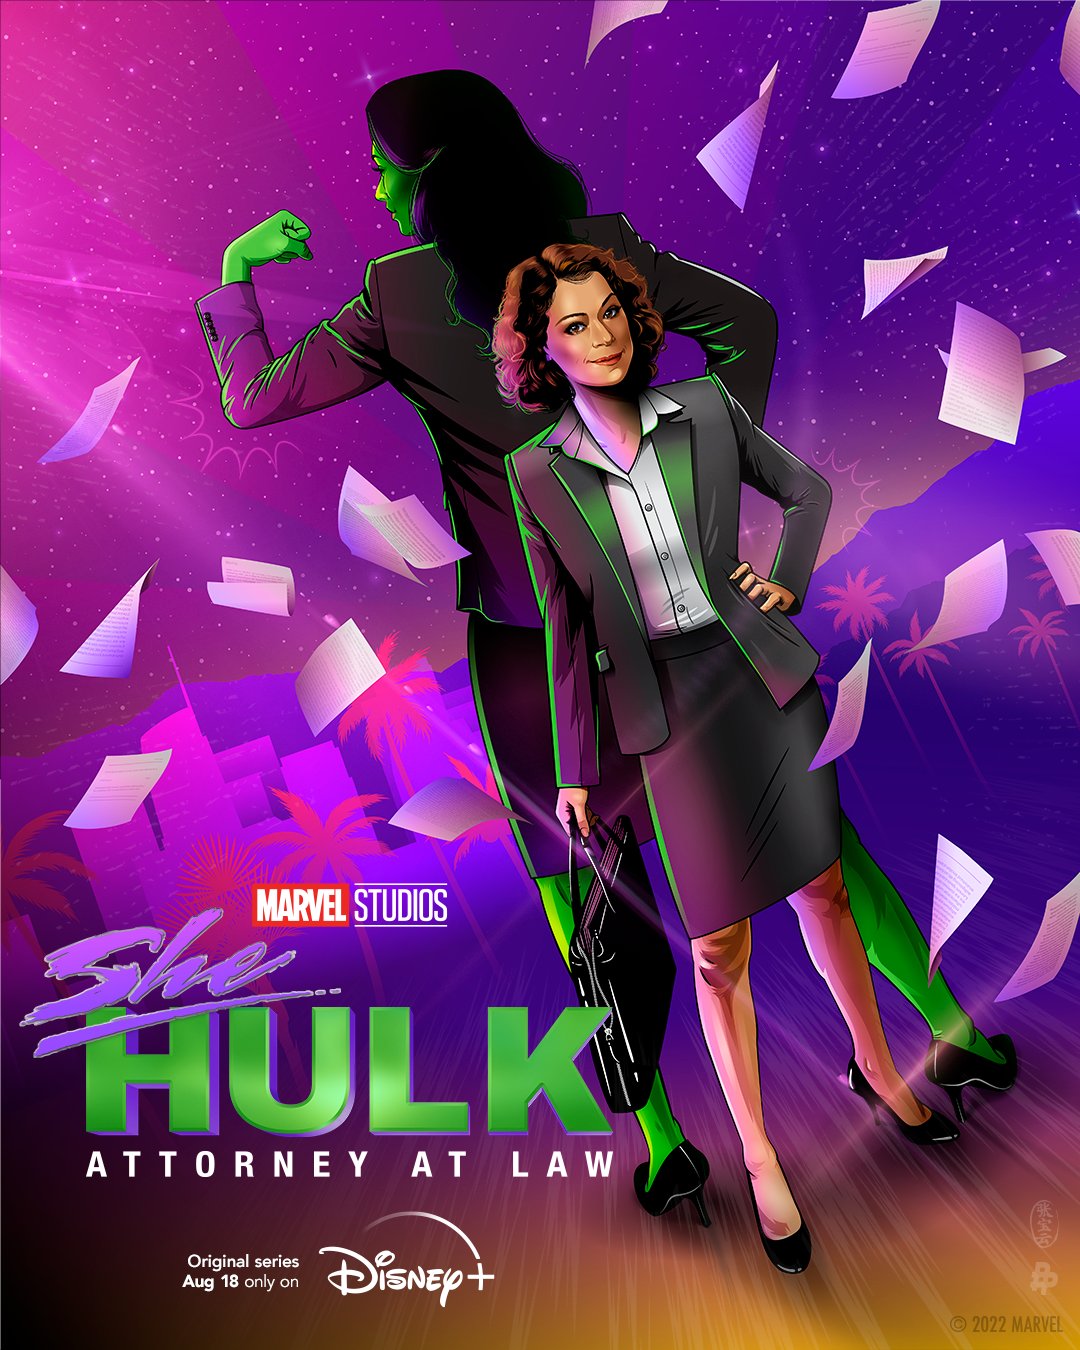 Official Disney +/ Marvel Studios - She Hulk